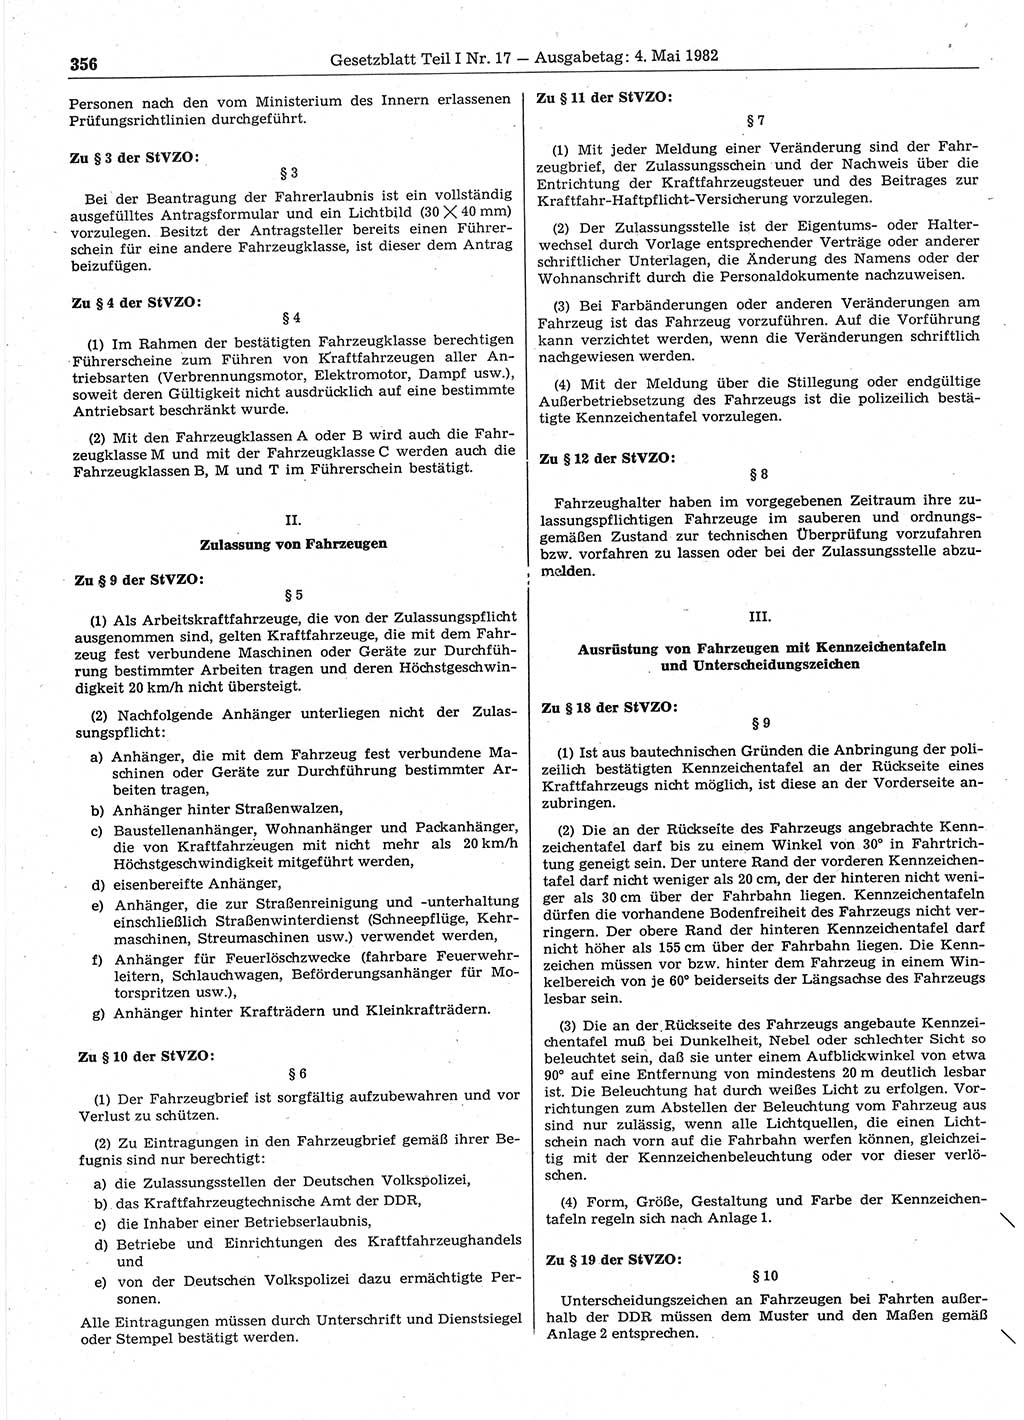 Gesetzblatt (GBl.) der Deutschen Demokratischen Republik (DDR) Teil Ⅰ 1982, Seite 356 (GBl. DDR Ⅰ 1982, S. 356)